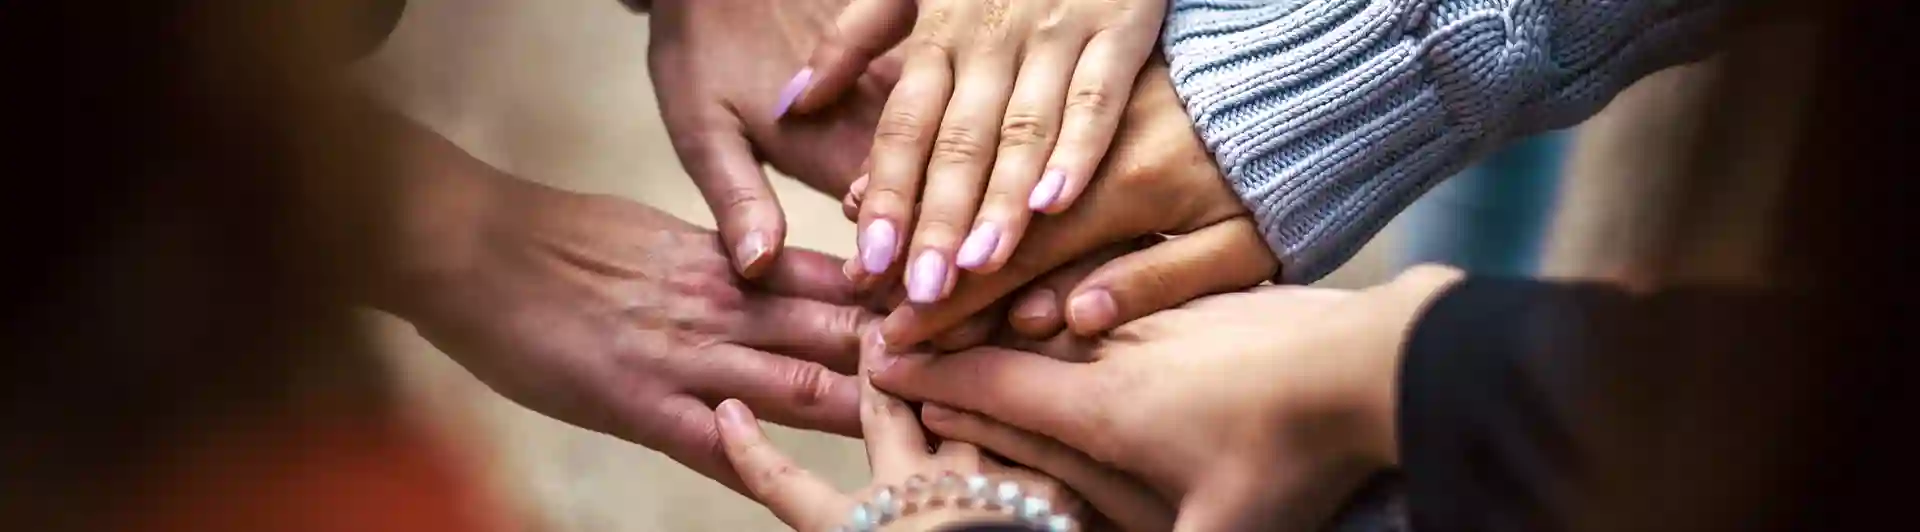 Bild som visar ett antal händer som möts och visar en känsla av gemenskap och samarbete.